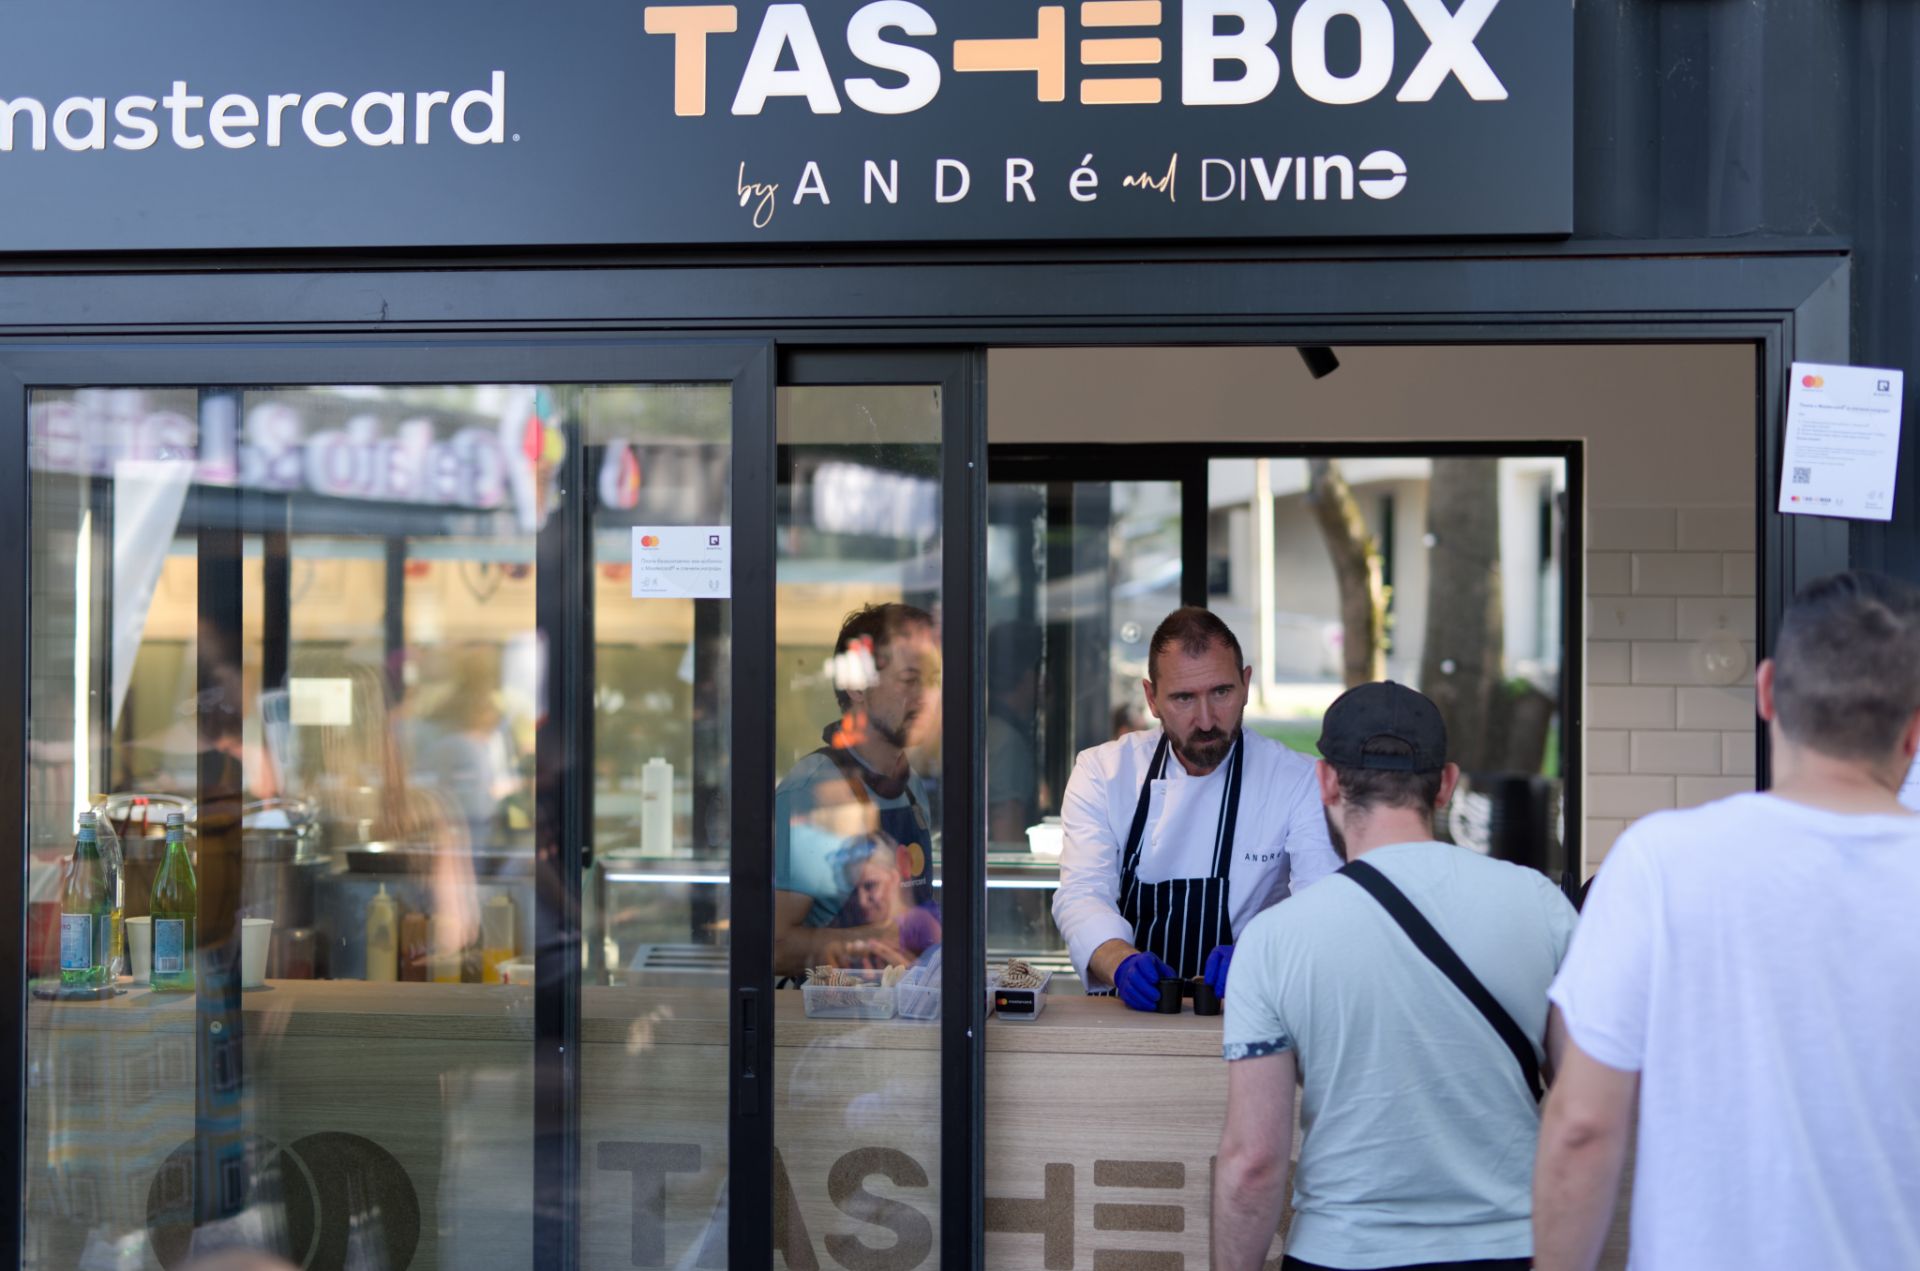 Mastercard TasteBox или Кулинарната кутия, както я нарича, е замислена като Gastro Pub и предлага интересна и разнообразна модерна street храна, съчетана с избрани български вина – внимателна селекция от DiVino